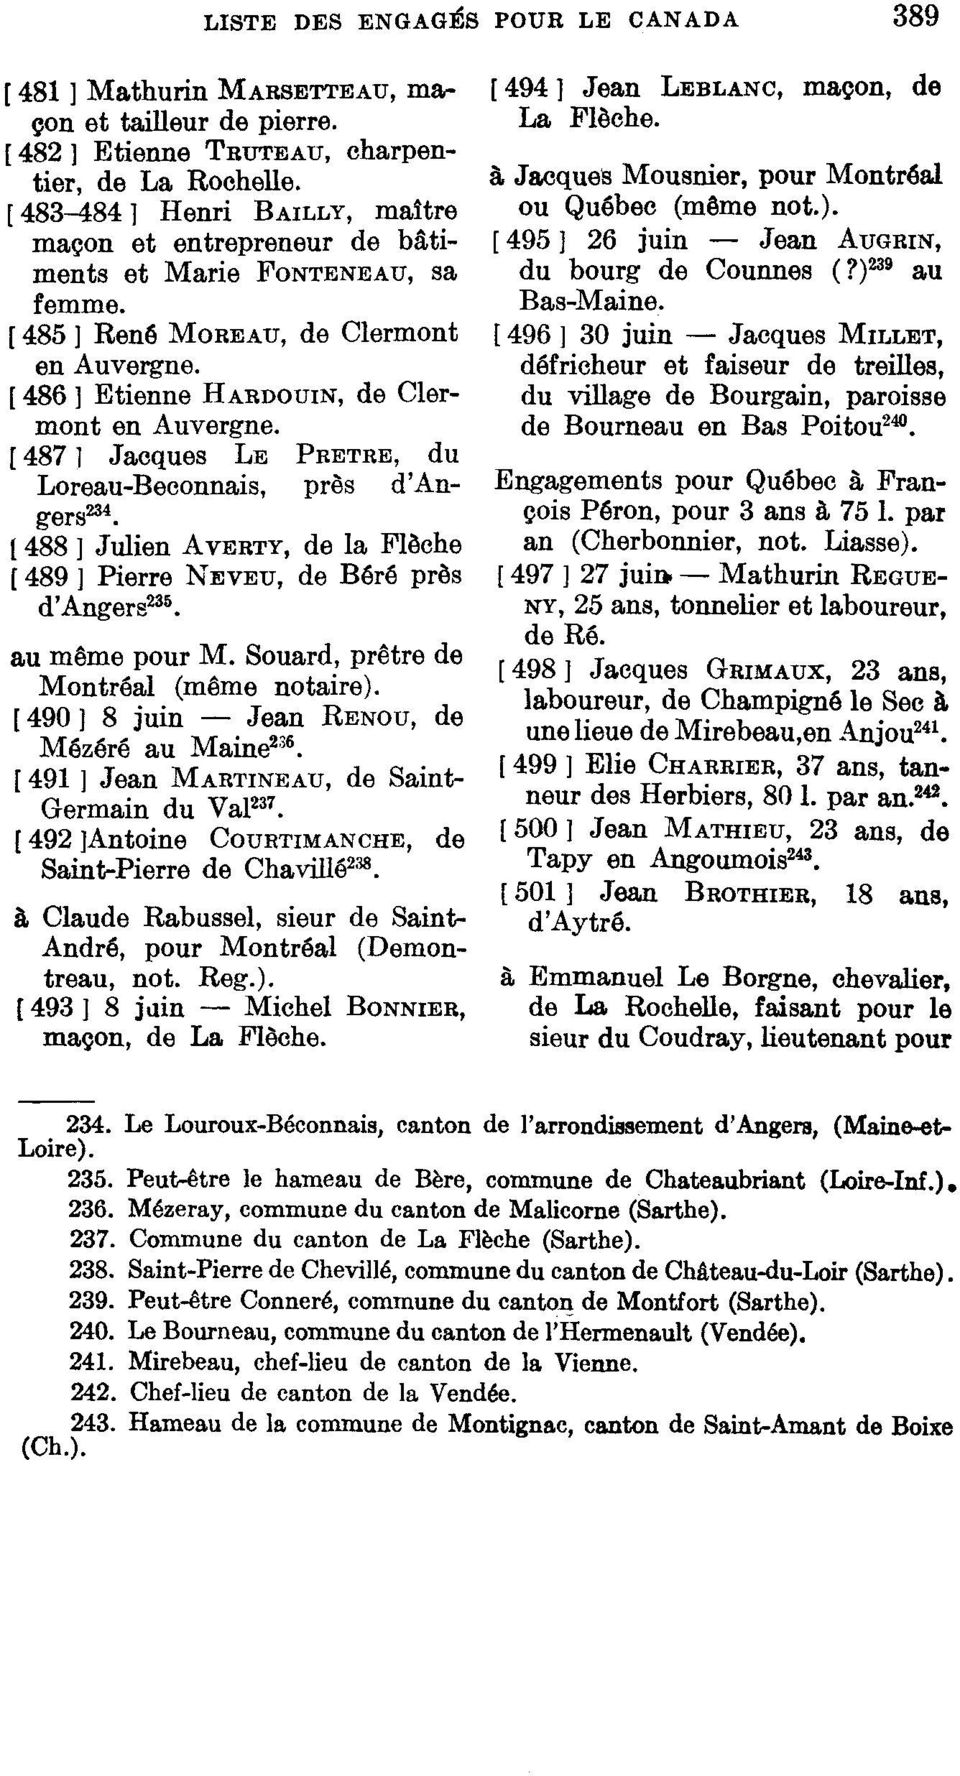 [ 487 ] Jacques LE PRÊTRE, du Loreau-Beconnais, près d'angers 234. 1488 ] Julien AVERTY, de la Flèche [ 489 ] Pierre NEVEU, de Béré près d'angers 236. au même pour M.